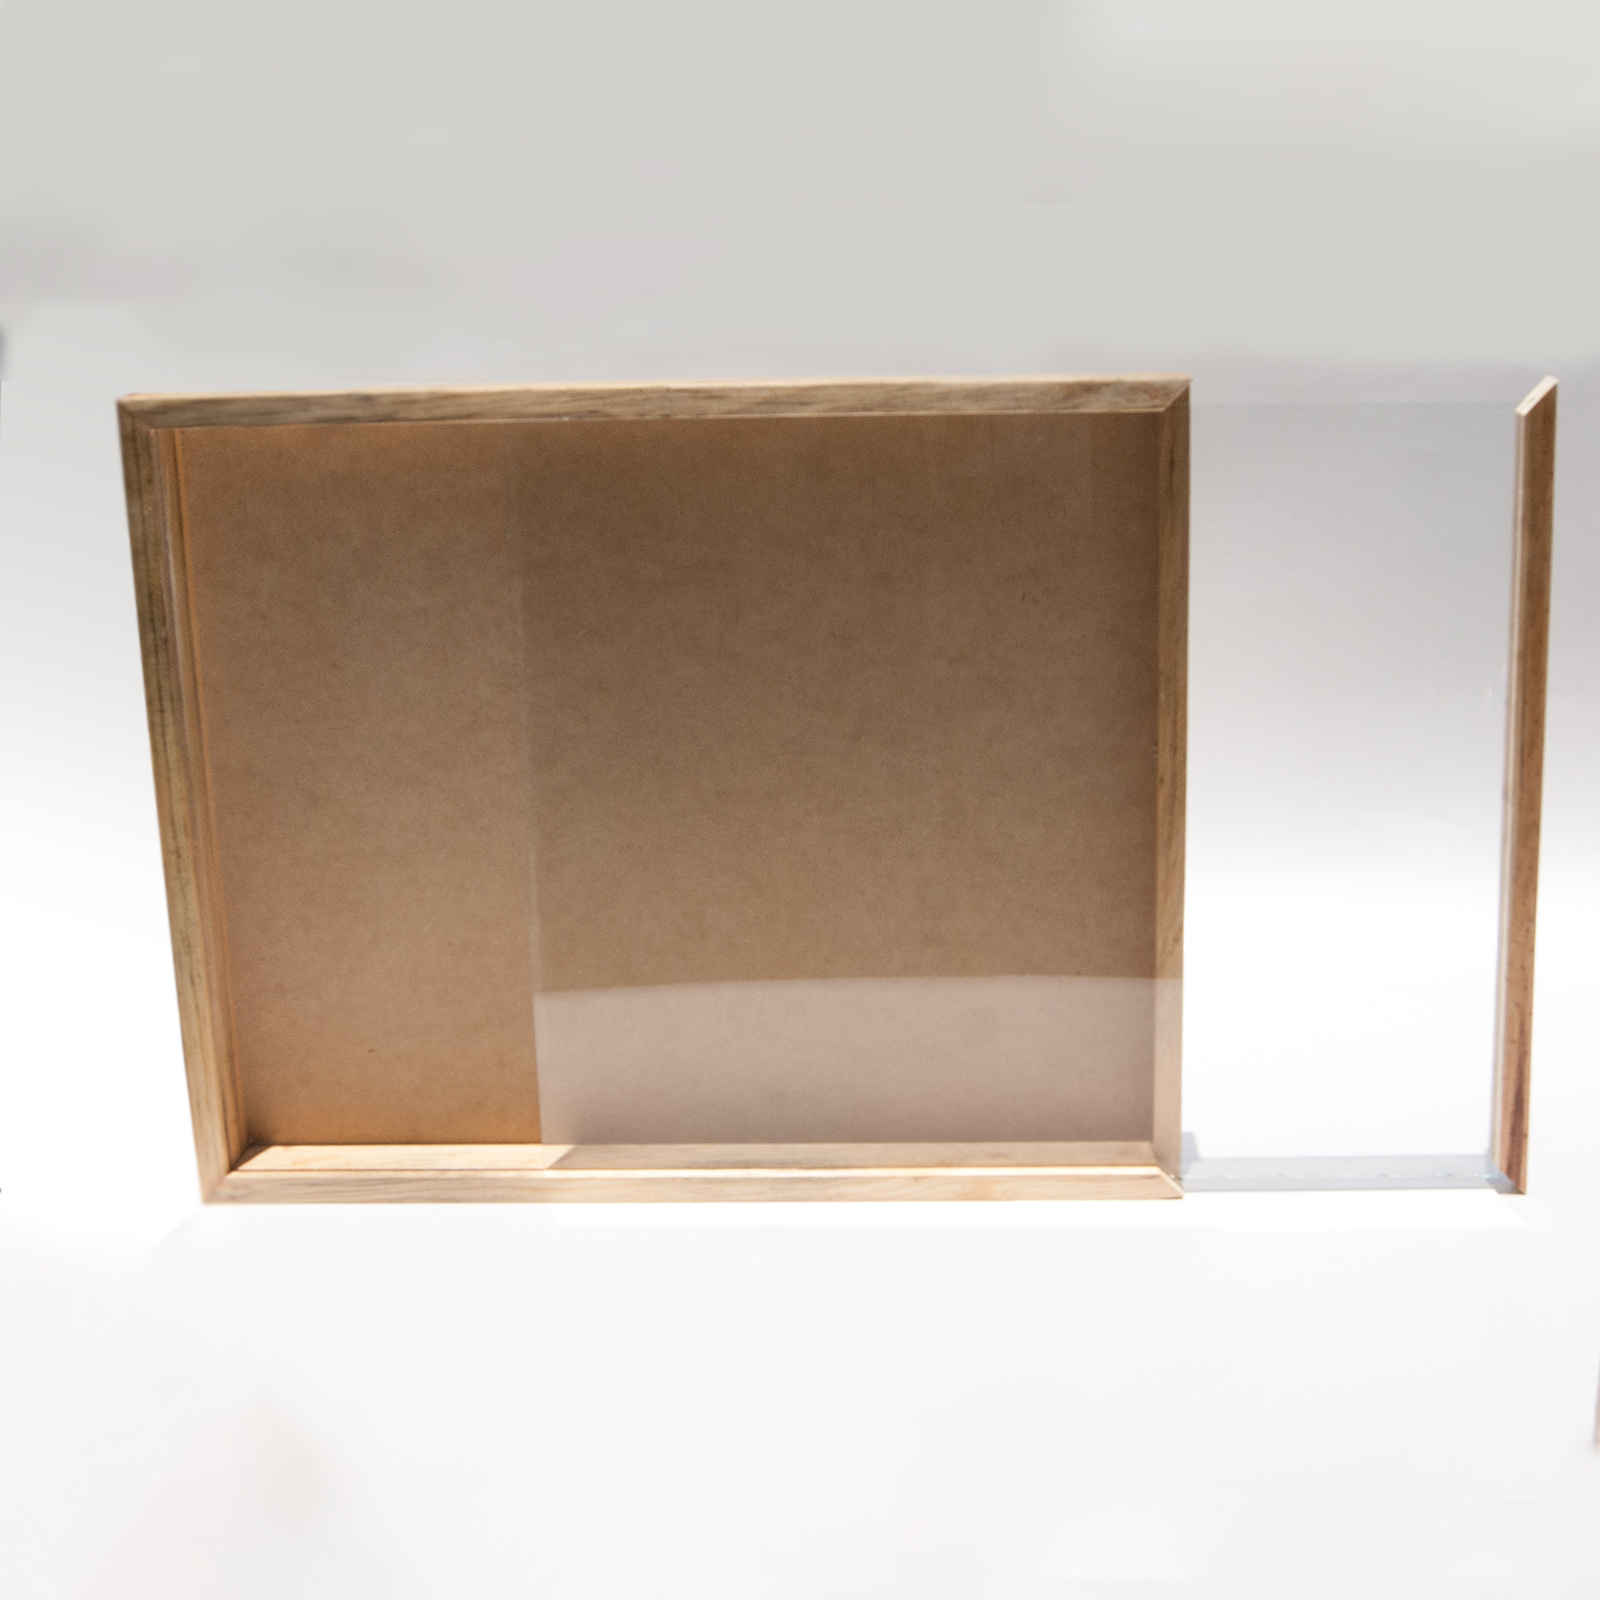 Caja de sombra de 30 x 30 pulgadas, marco contemporáneo blanco – Marco de  caja de sombra tamaño interior 30 x 30 x 1 pulgada de profundidad – El  marco